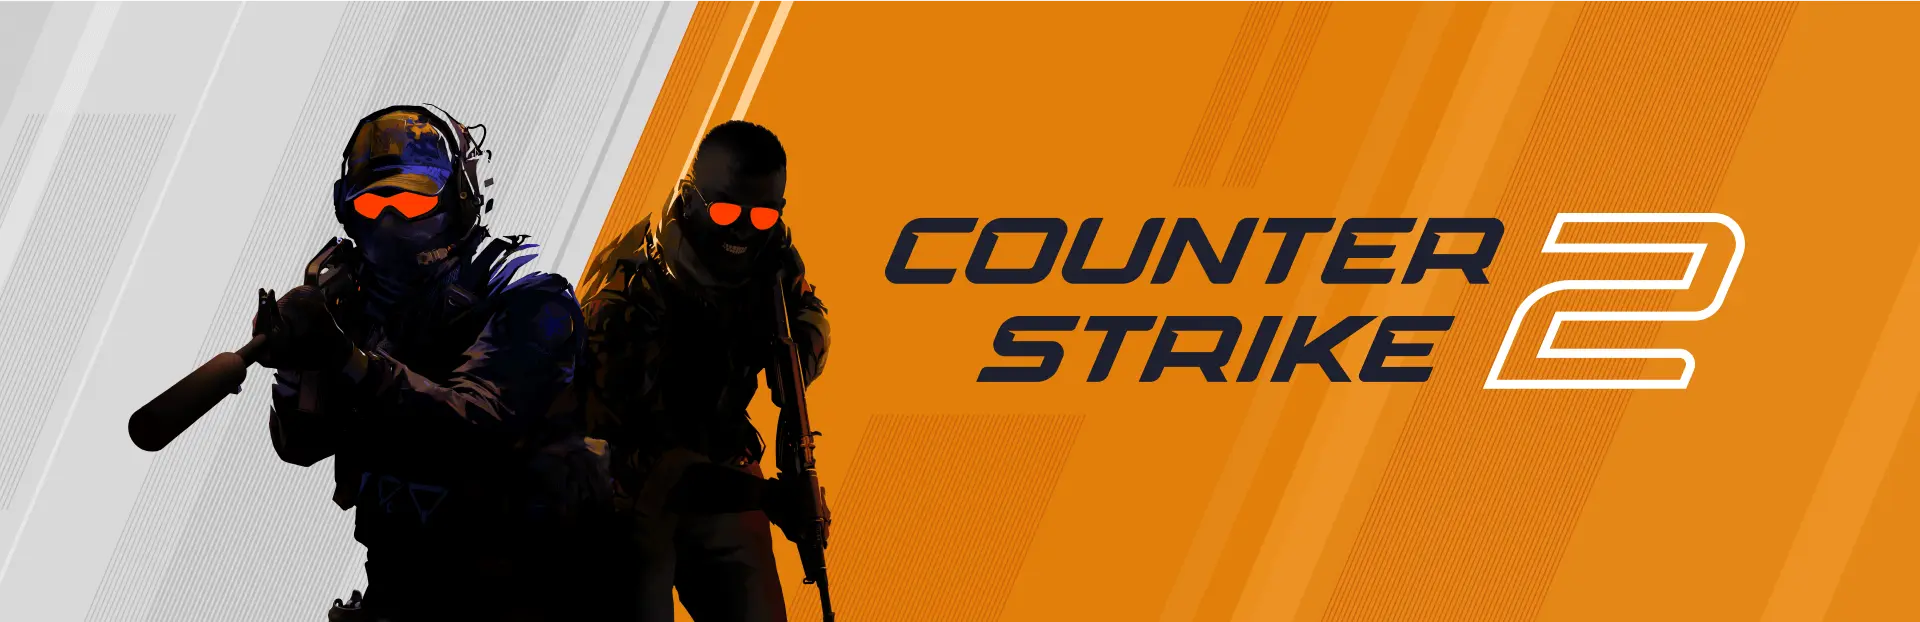 Counter-Strike 2 İçin Yeni Güncelleme: Vertigo Güncellendi, M4A4'e İndirim...